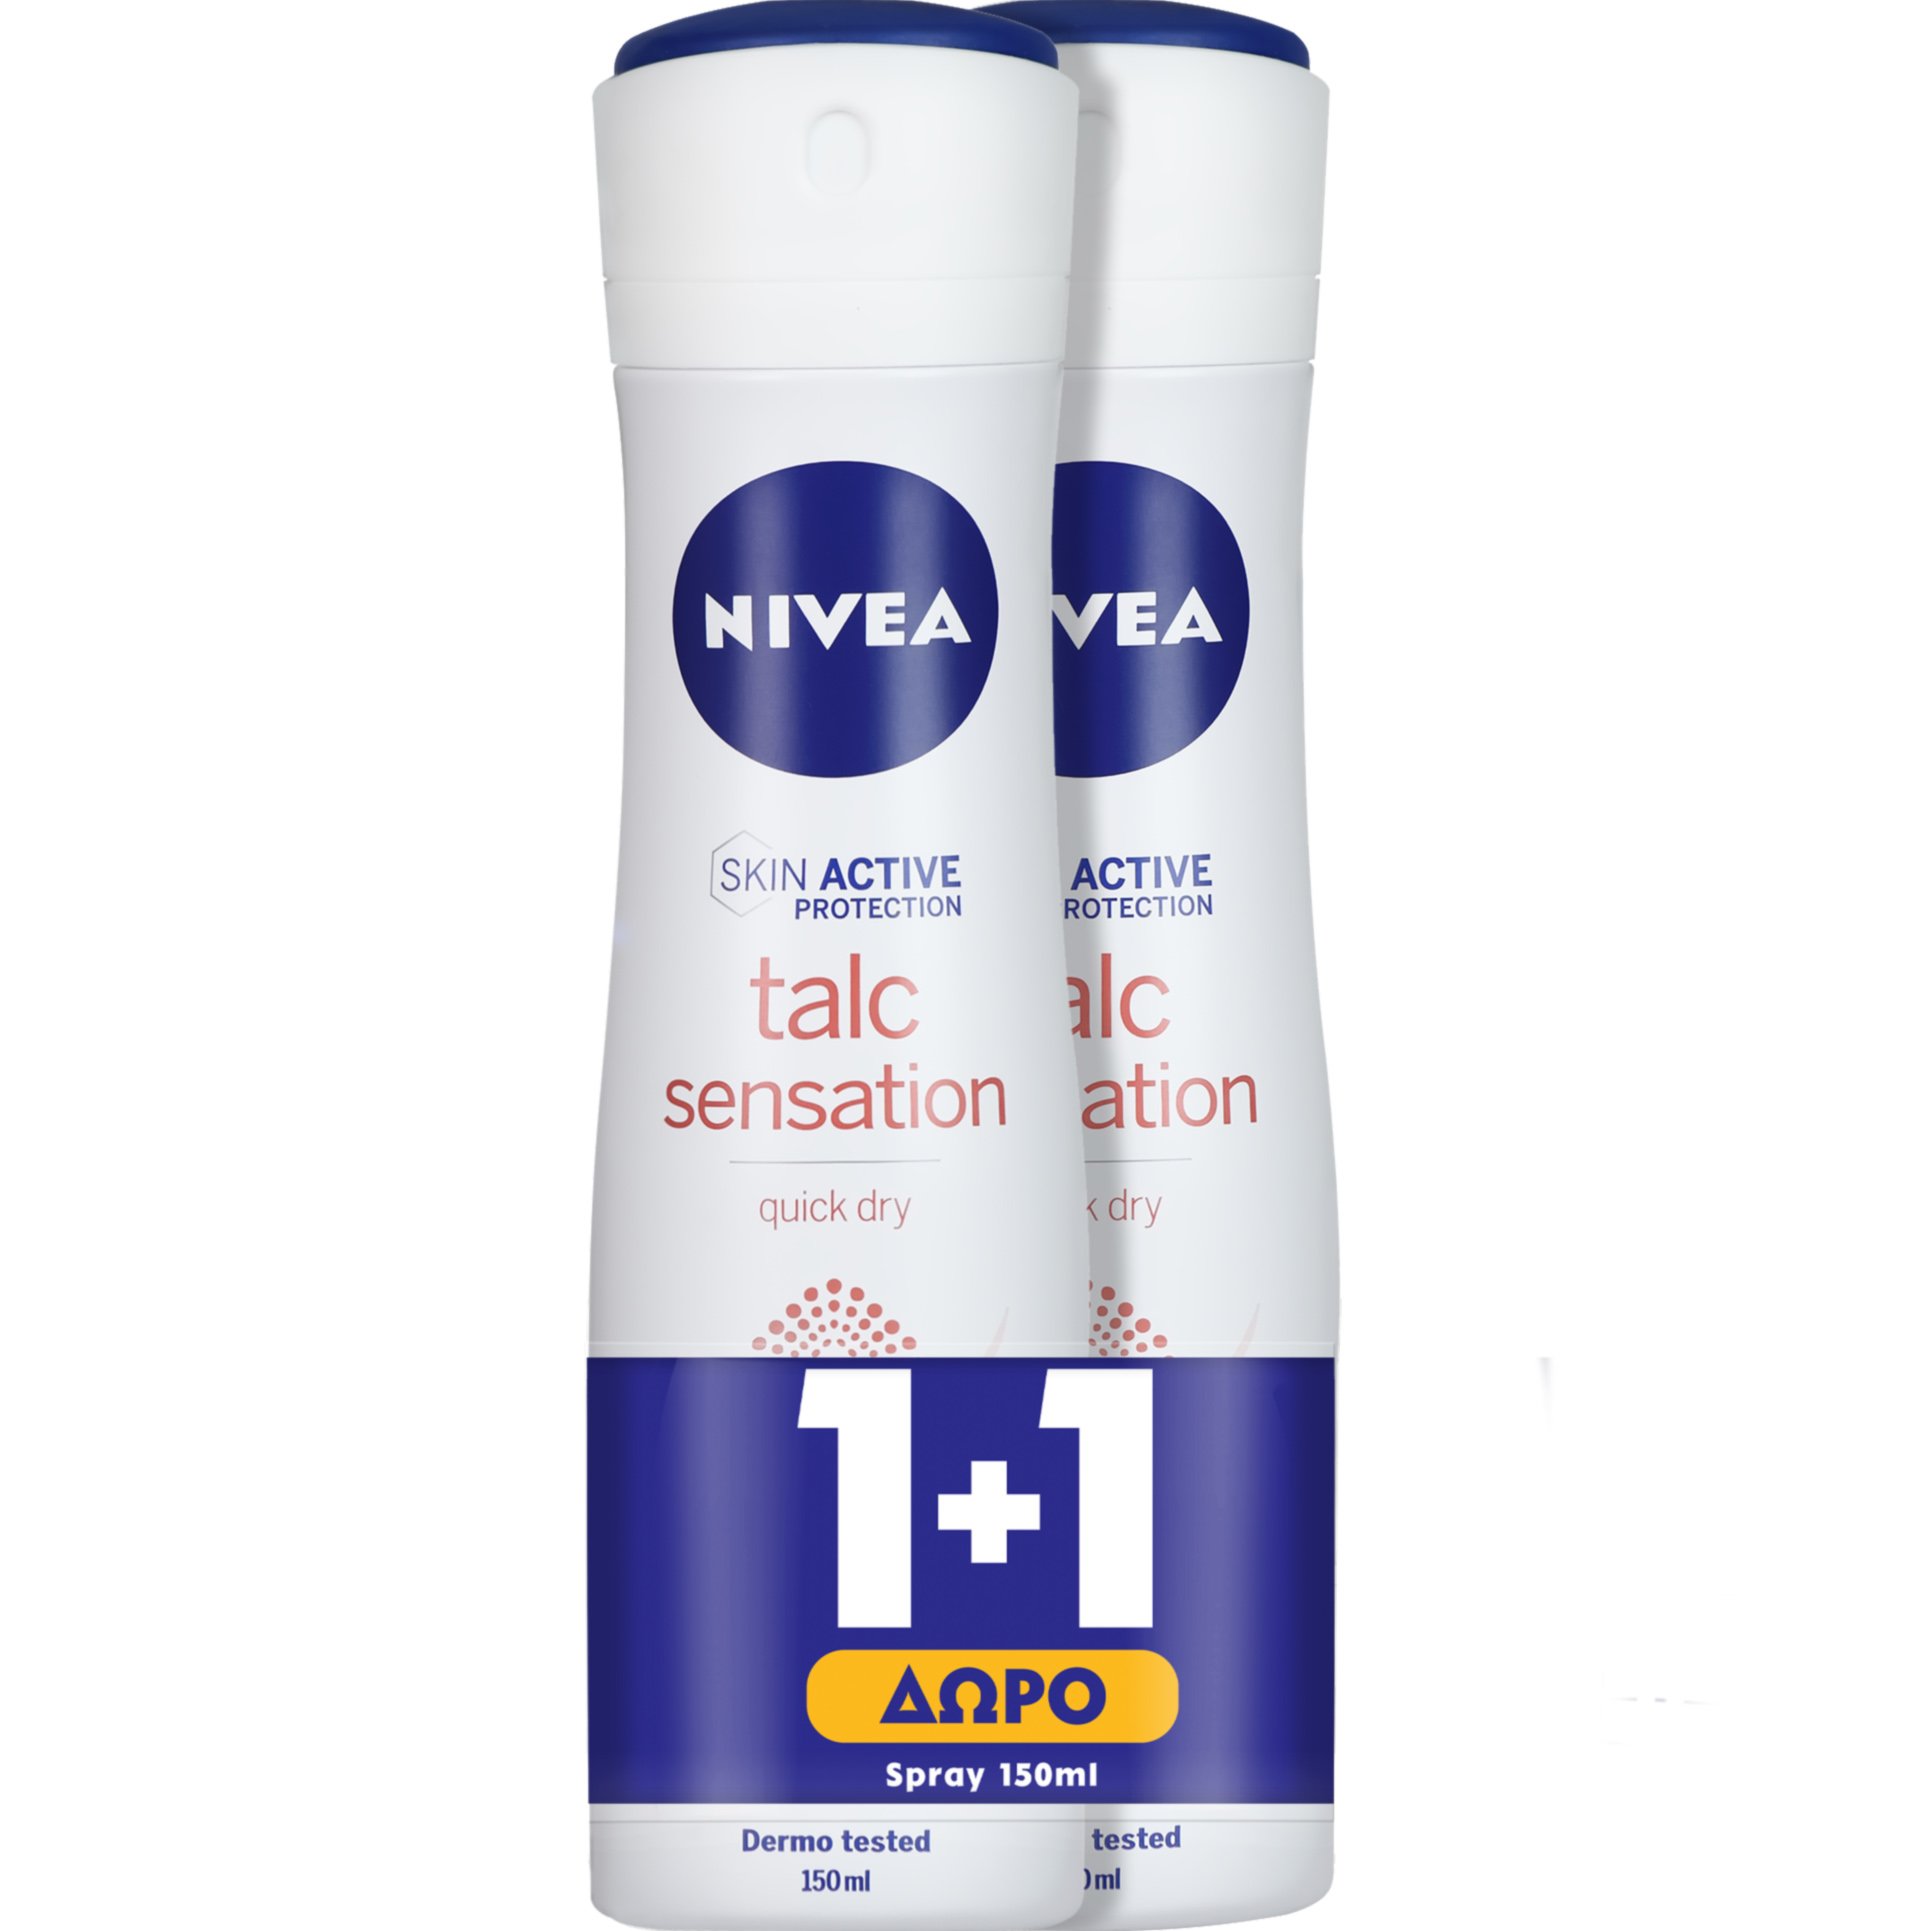 Nivea Promo Talc Sensation Quick Dry Deodorant Spray Γυναικείο Αποσμητικό 48ωρης Προστασίας με Πούδρα Kaolin  2x150ml 1+1 Δώρο